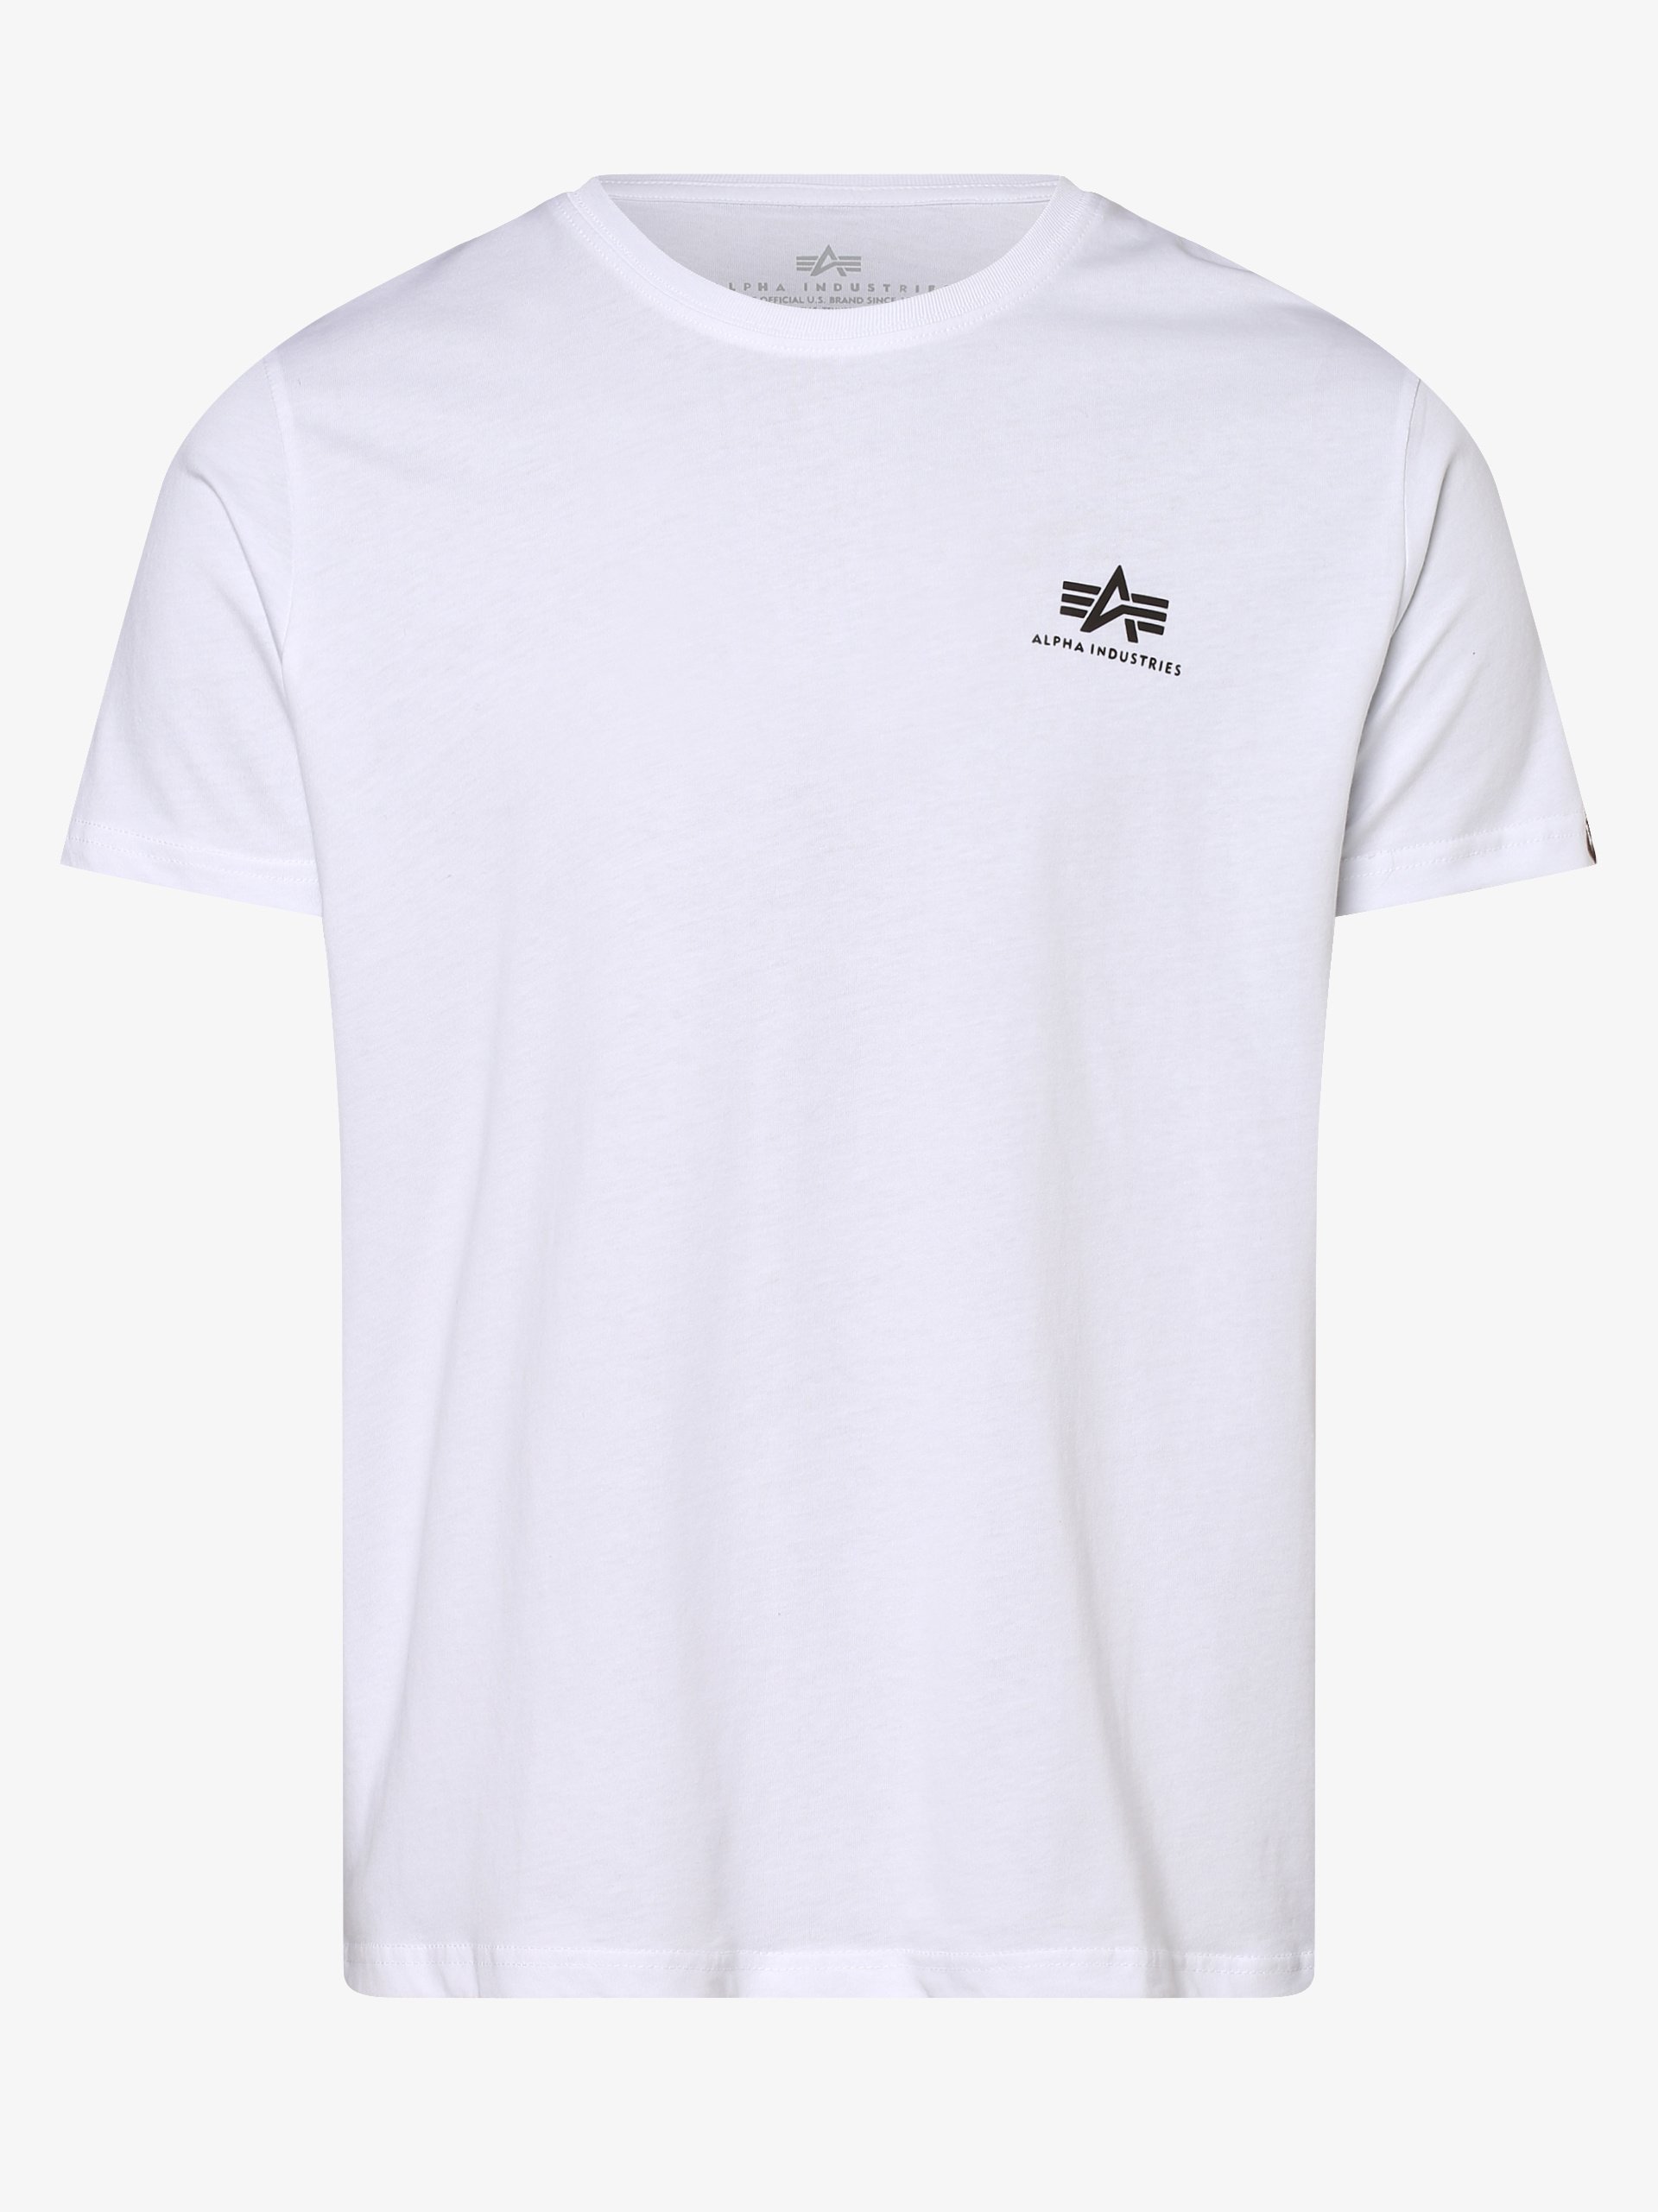 Alpha Industries T-Shirt Herren kaufen online